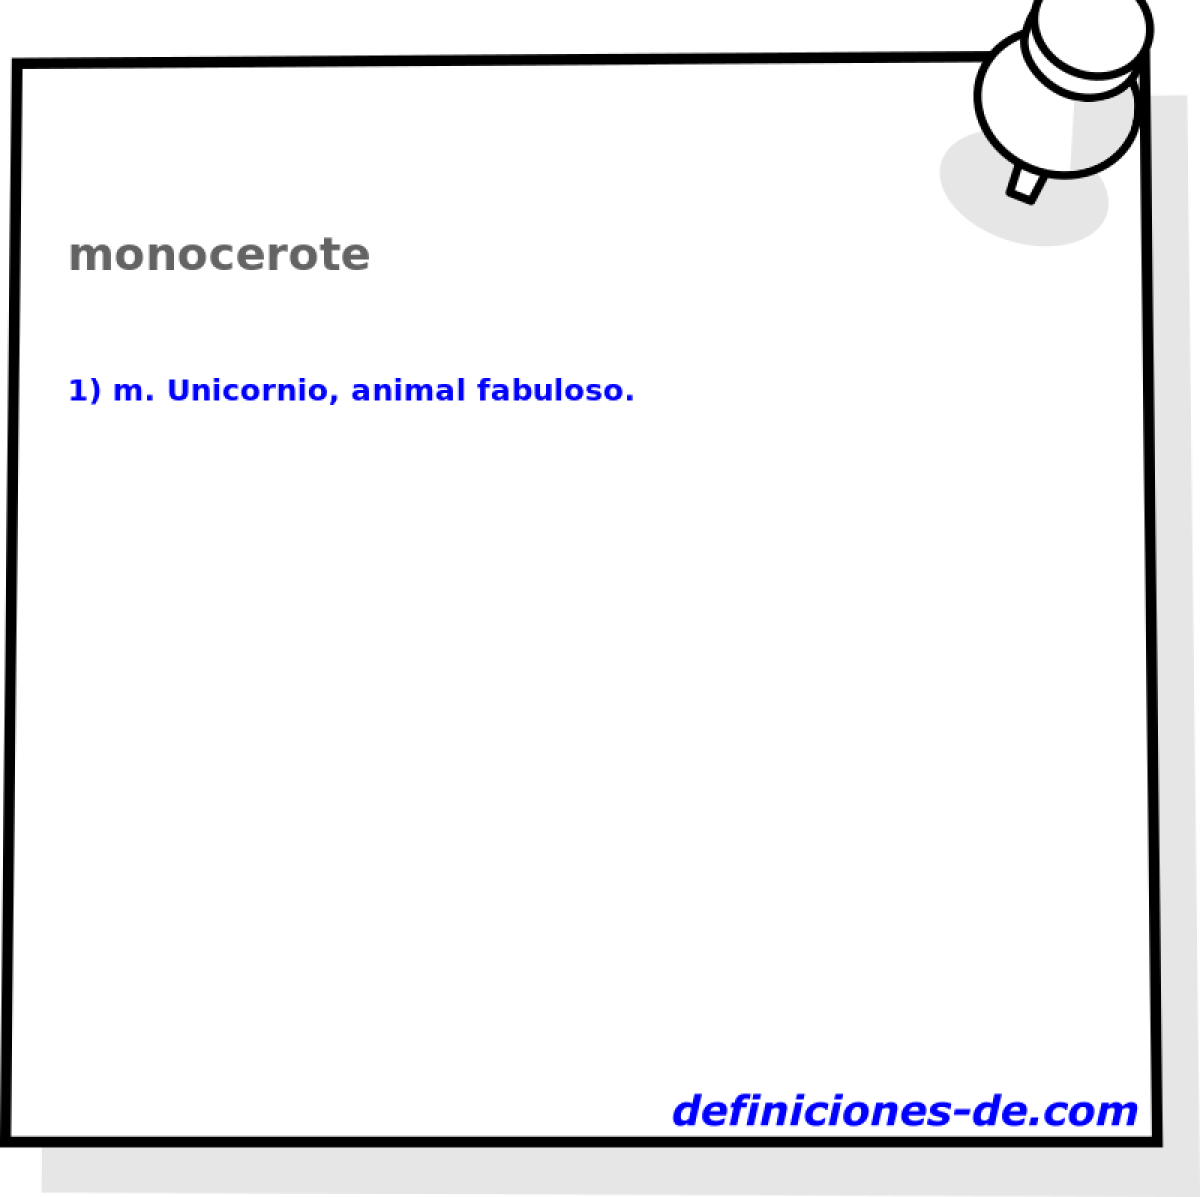 monocerote 